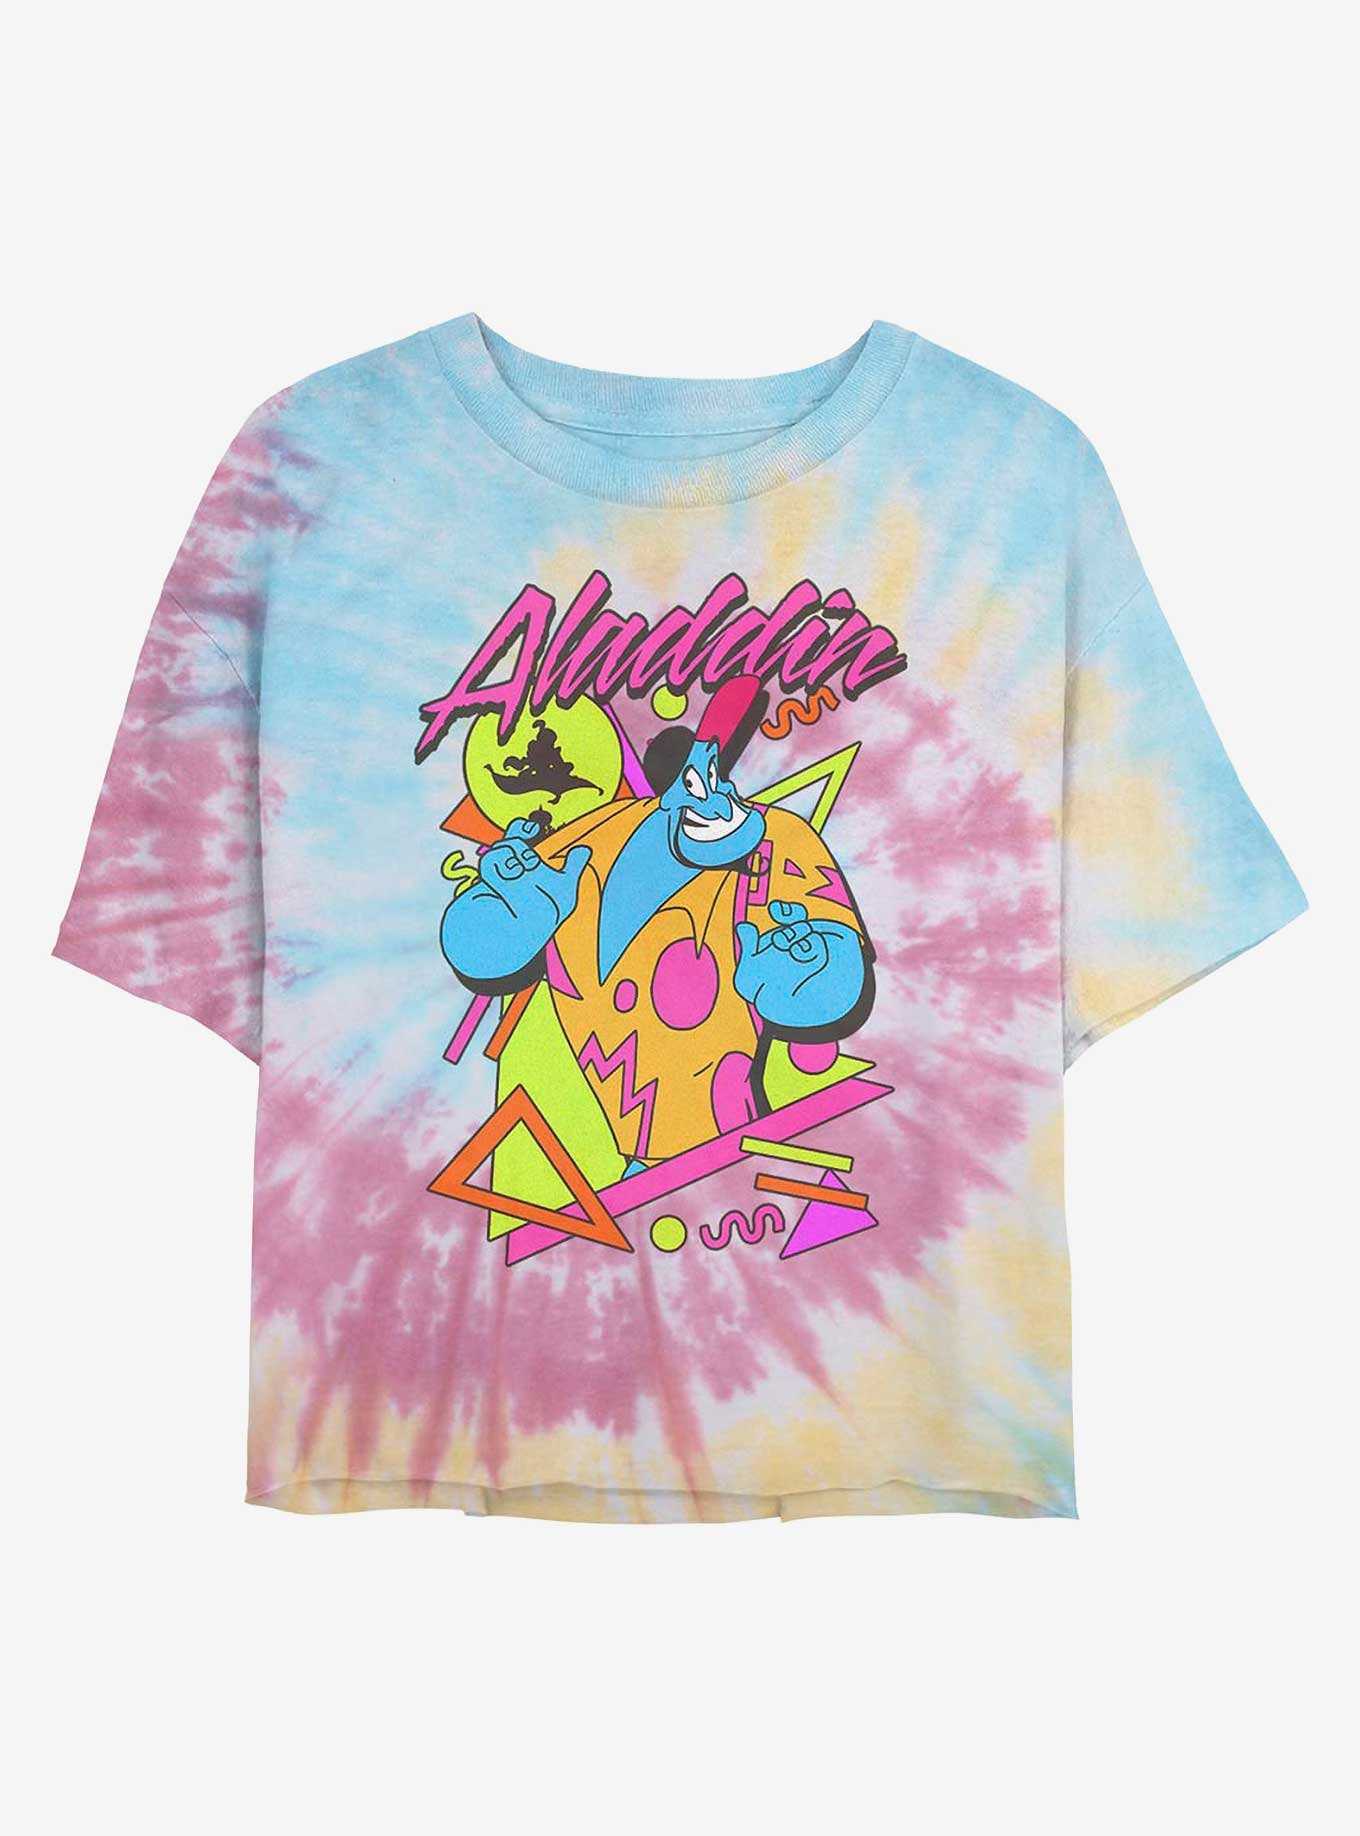 Disney Aladdin Genie On Vacation Tie Dye Crop Girls T-Shirt, , hi-res